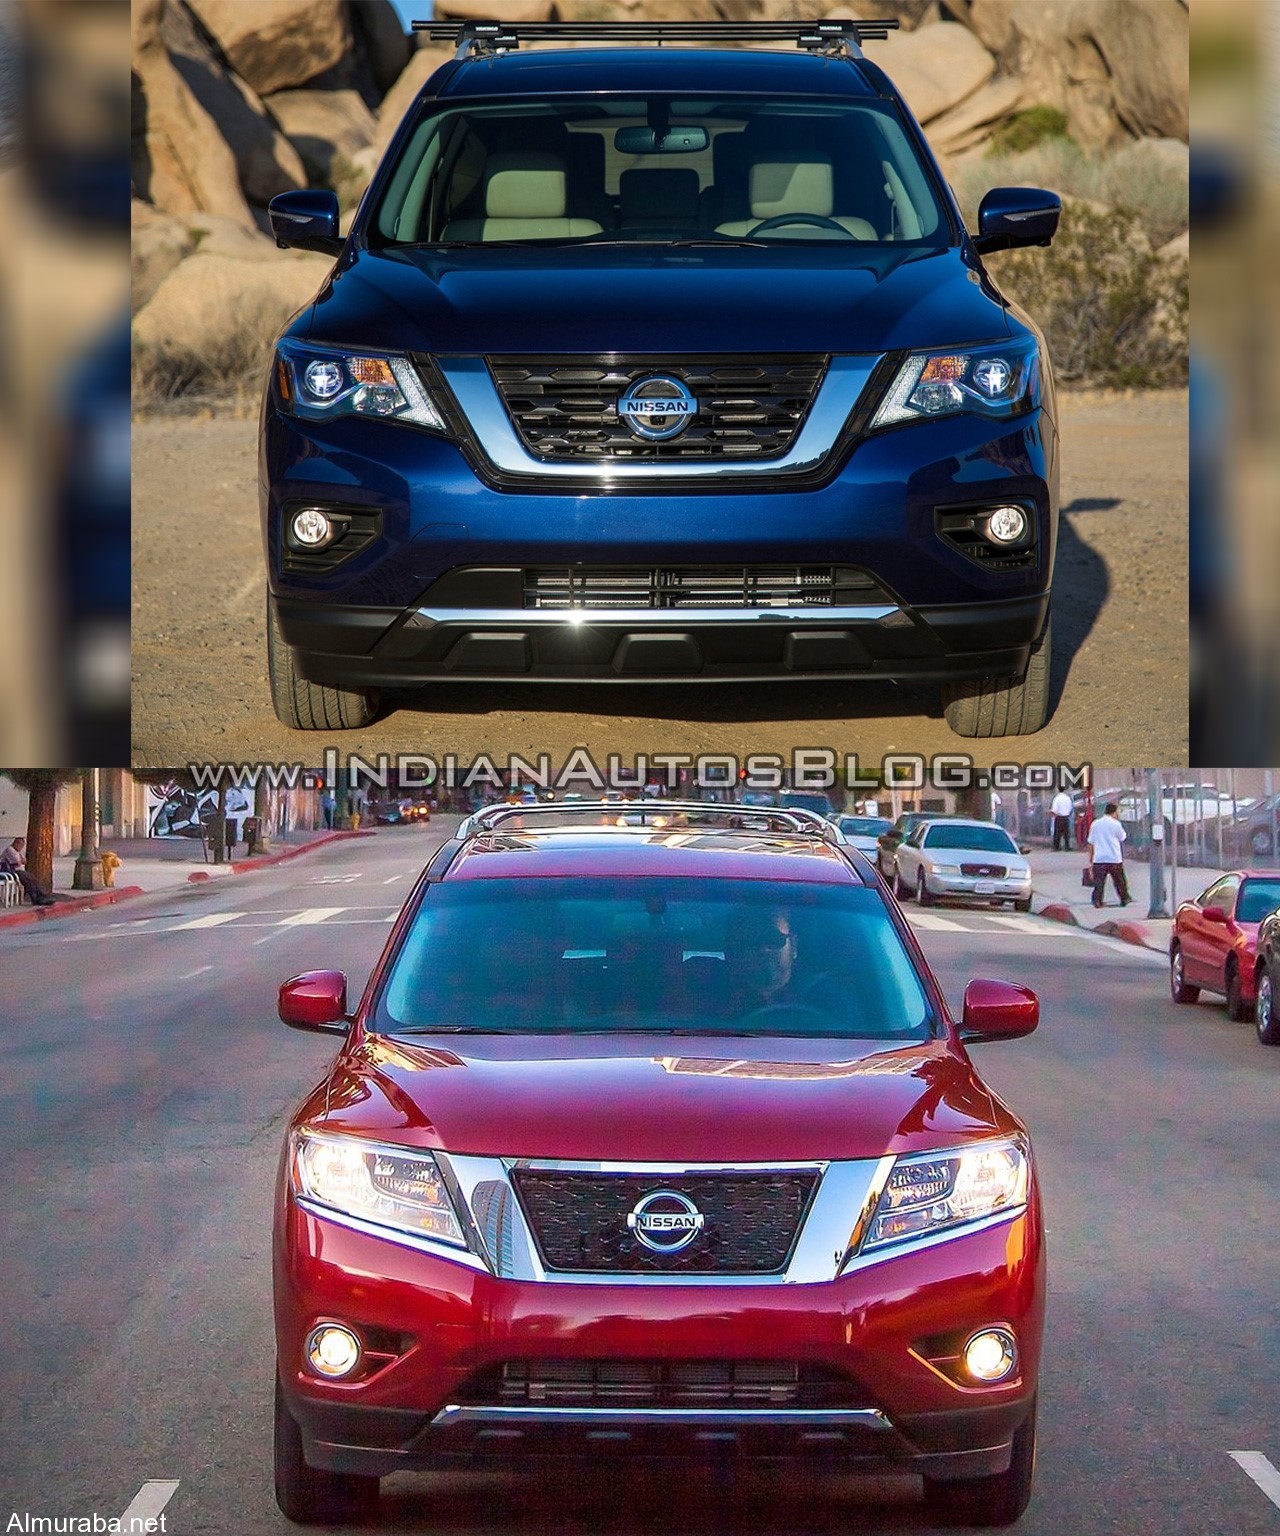 2017-Nissan-Pathfinder-facelift-vs.-2013-Nissan-Pathfinder-front